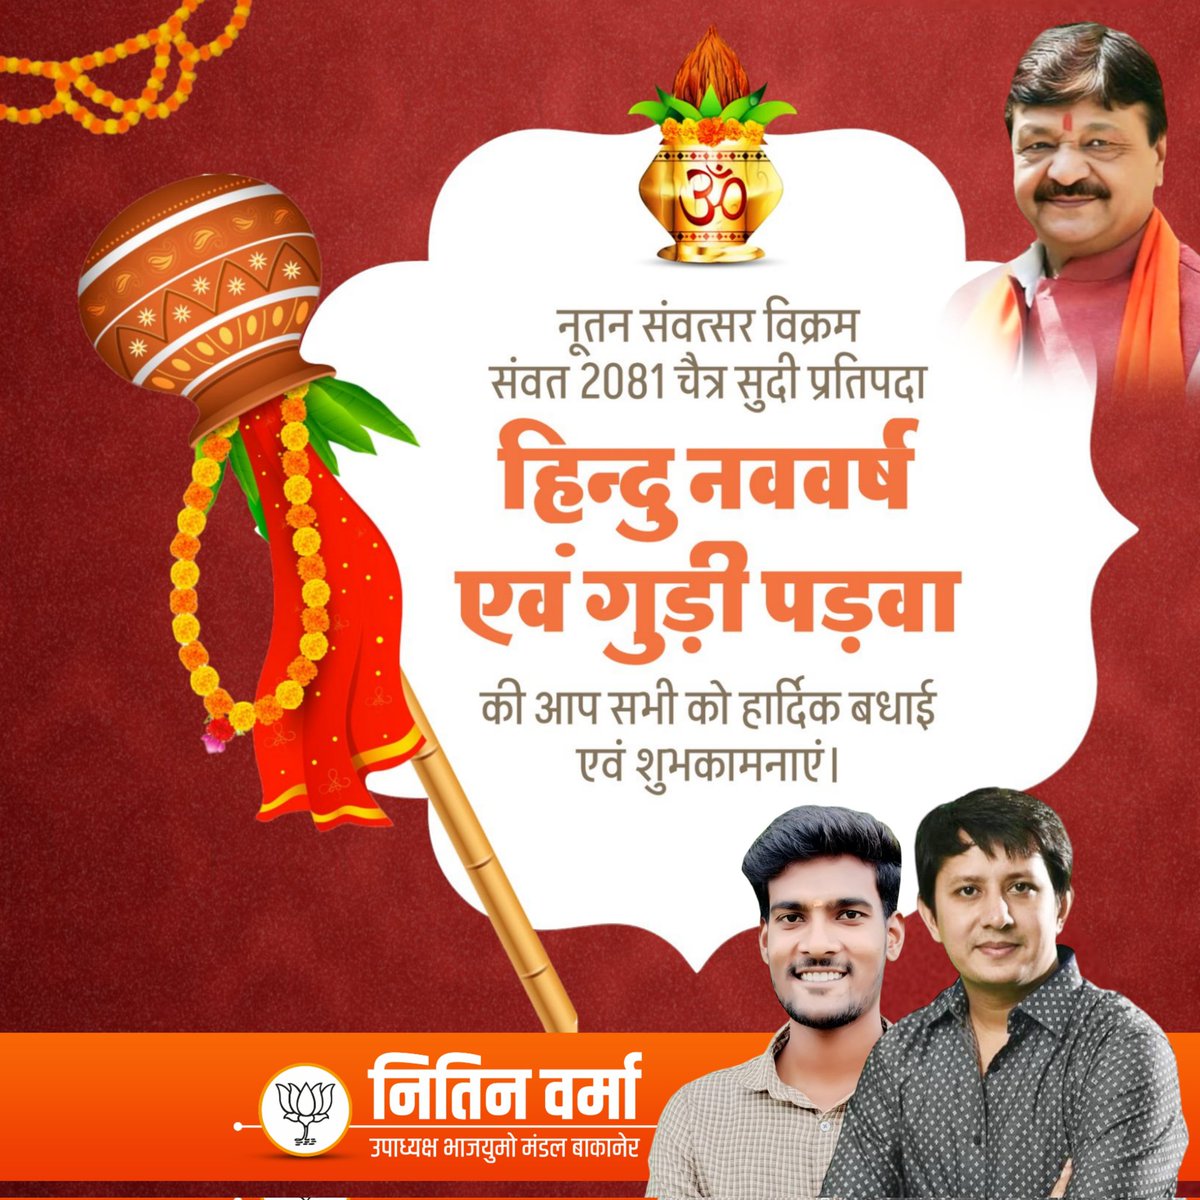 हिन्दु नववर्ष एवं गुड़ी पड़वा की आप सभी को हार्दिक बधाई एवं शुभकामनाएं #HinduNavVarsh #GudiPadwa #NitinVermaBJYM